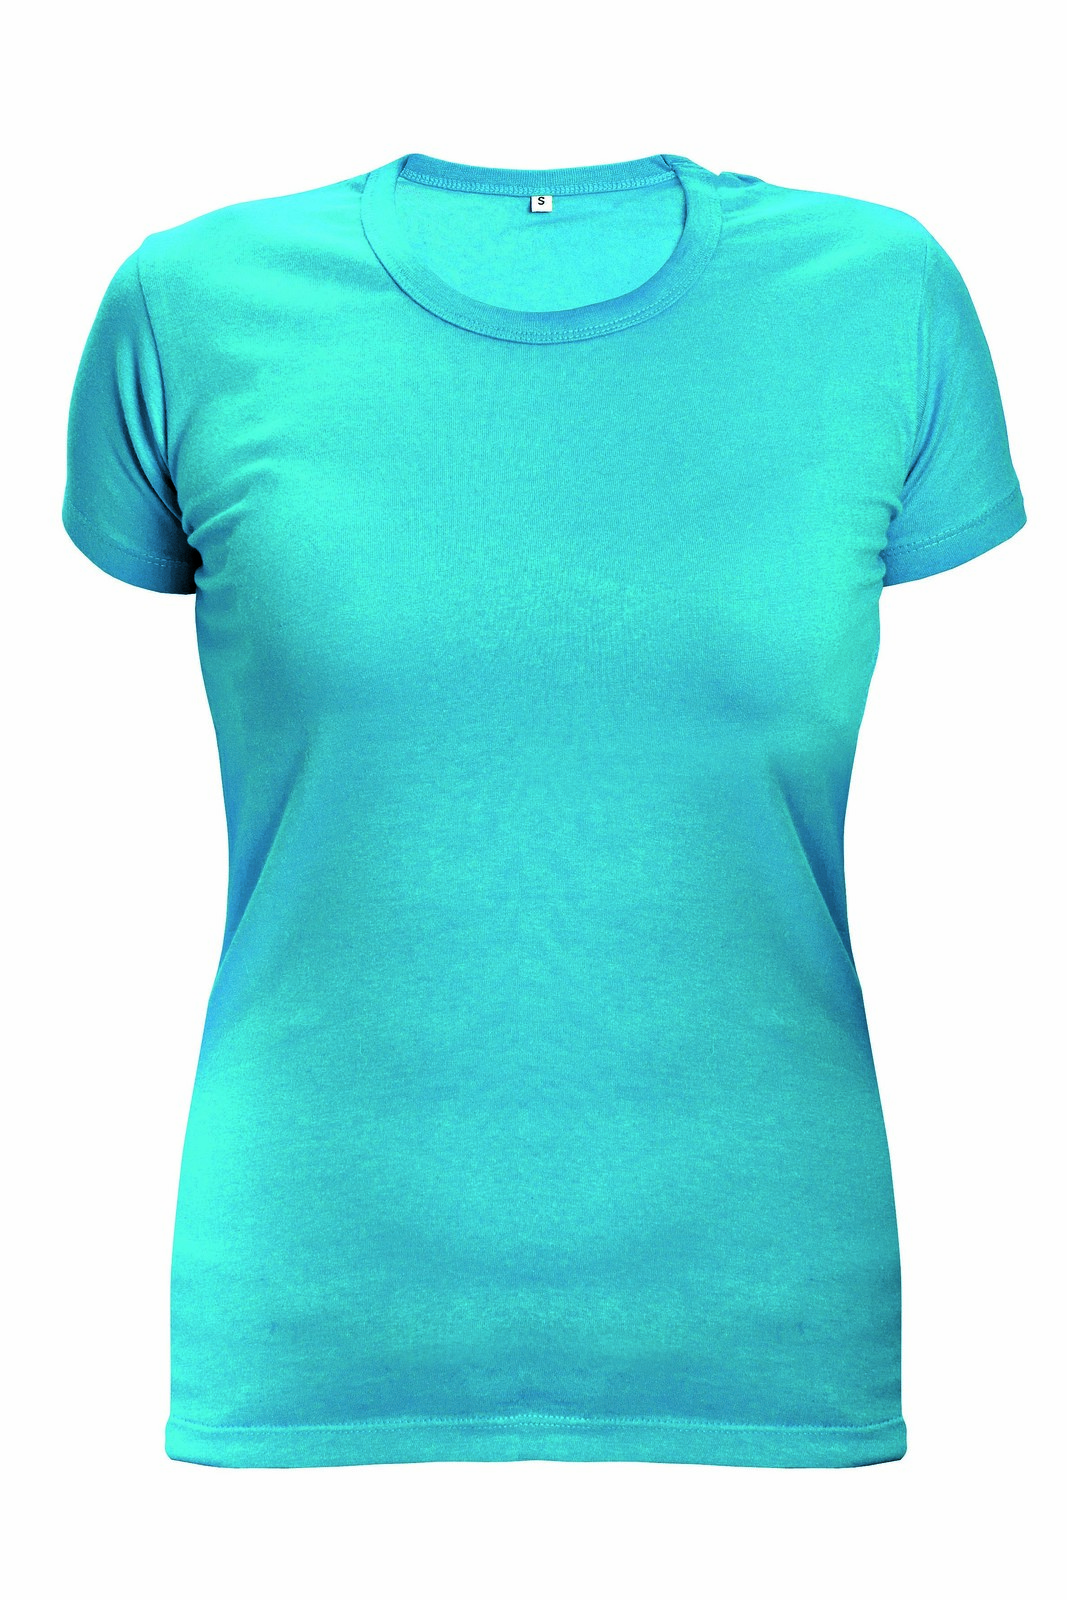 Dámske tričko s krátkym rukávom Surma Lady - veľkosť: L, farba: tyrkysová